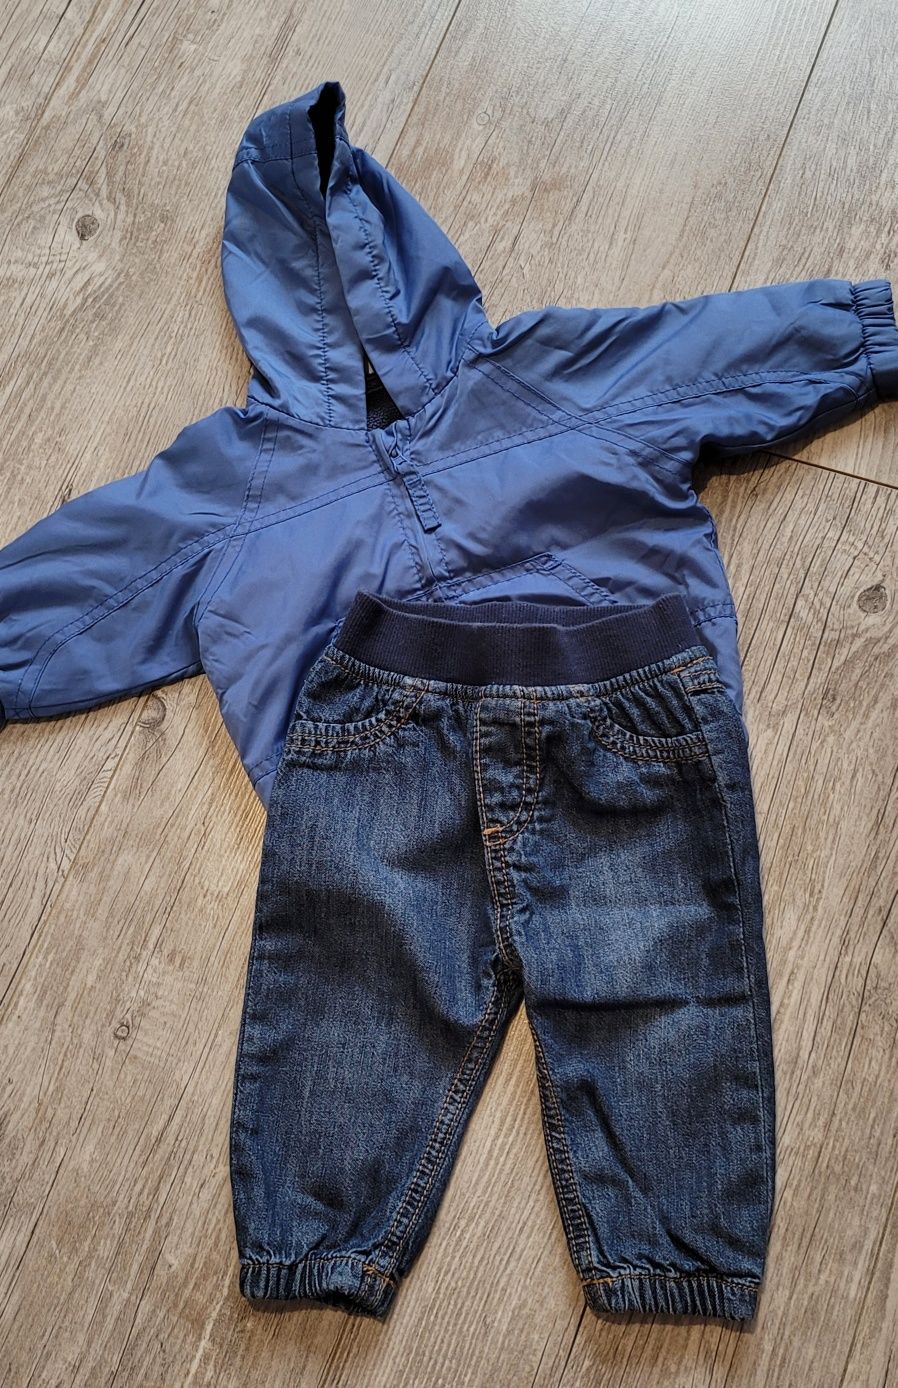 Kurtka, spodnie jeasny, koszula chłopięca r.56